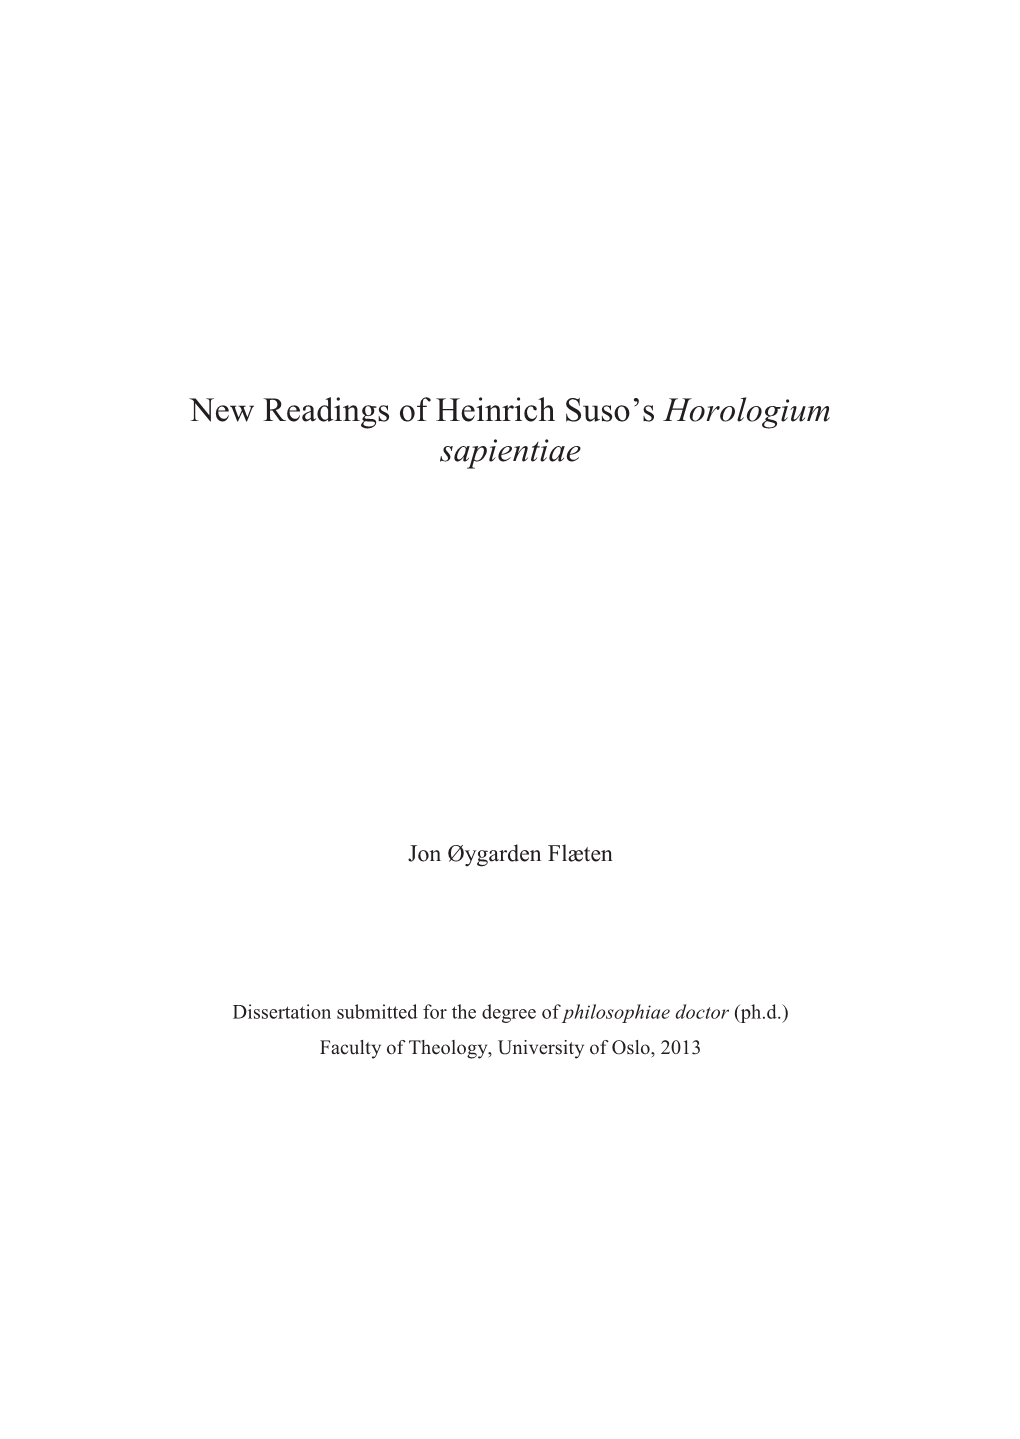 New Readings of Heinrich Suso's Horologium Sapientiae